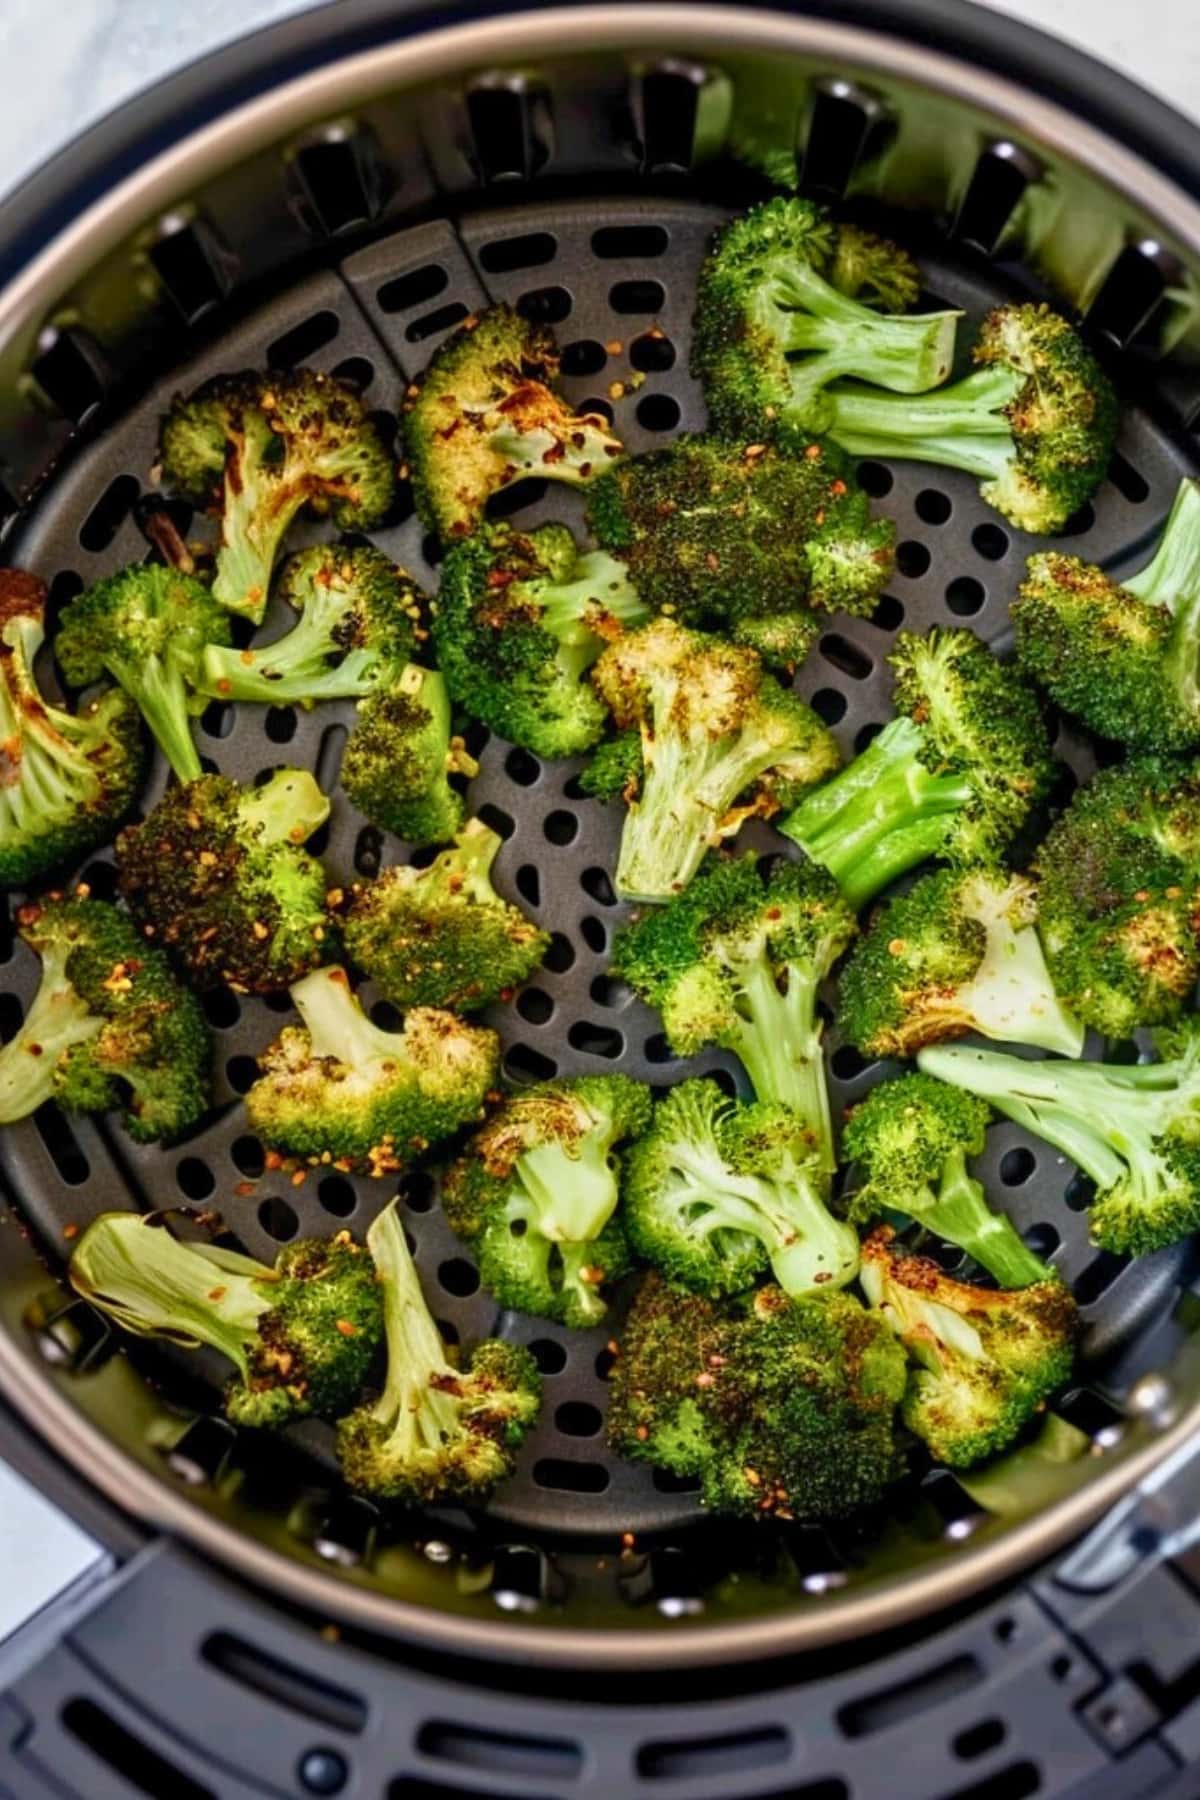 Broccoli florets inside an air fryer.